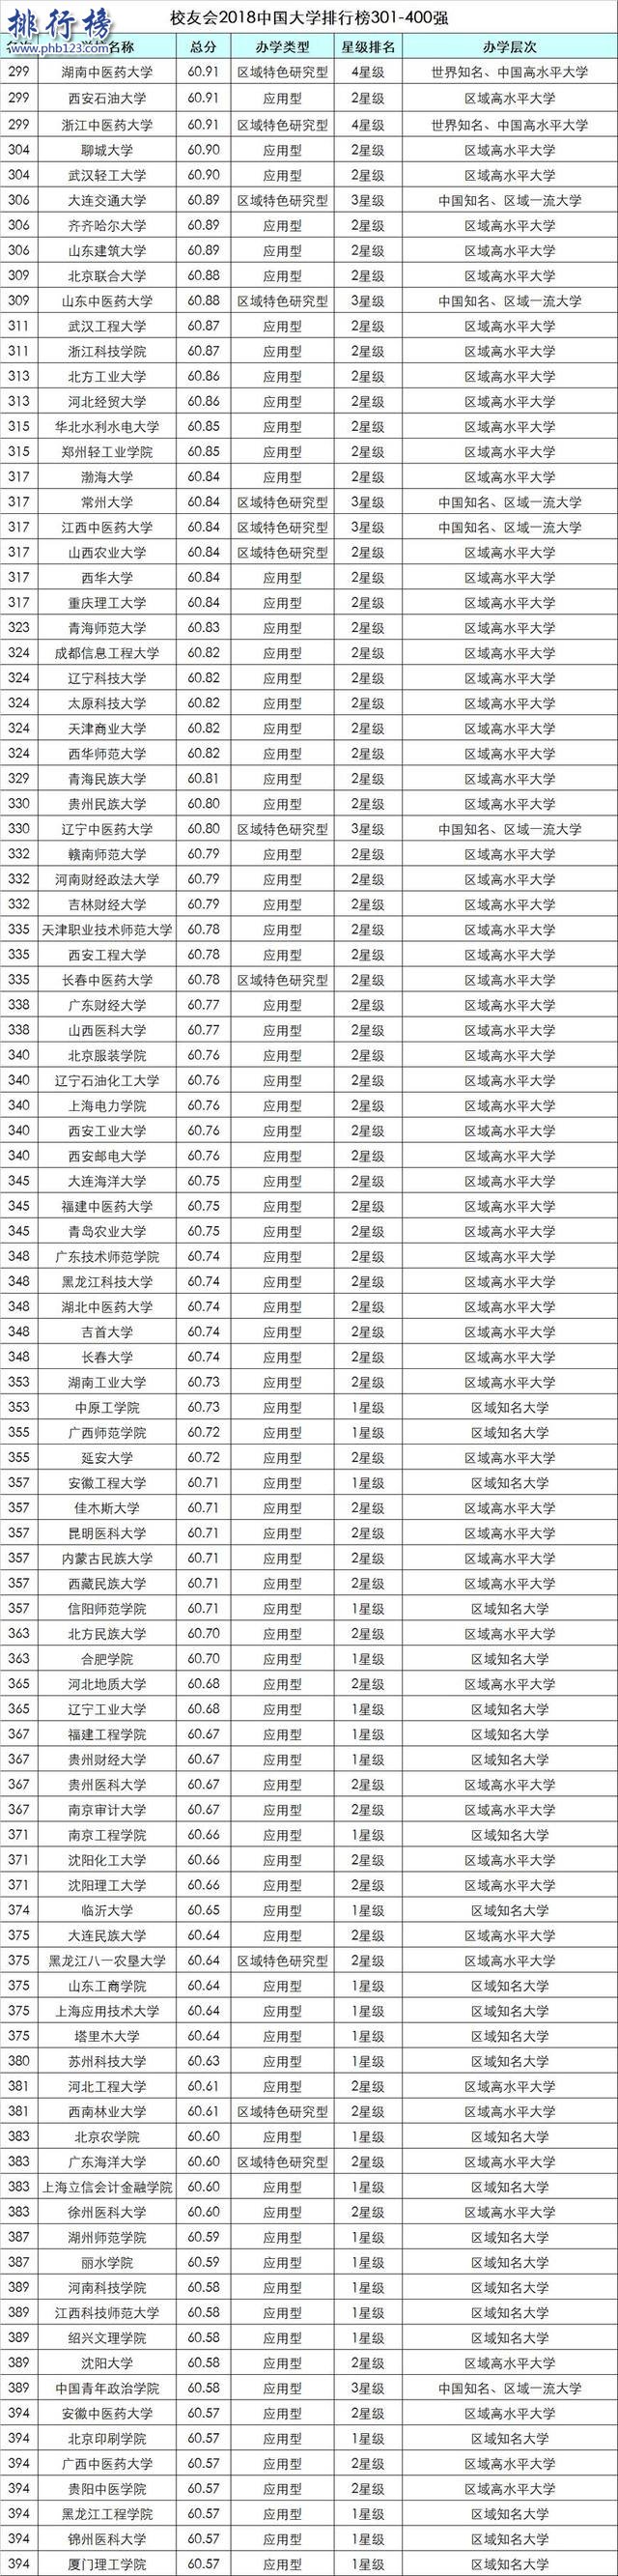 校友会2018中国大学排行榜:北大力压清华登顶,浙大第3(附完整榜单)